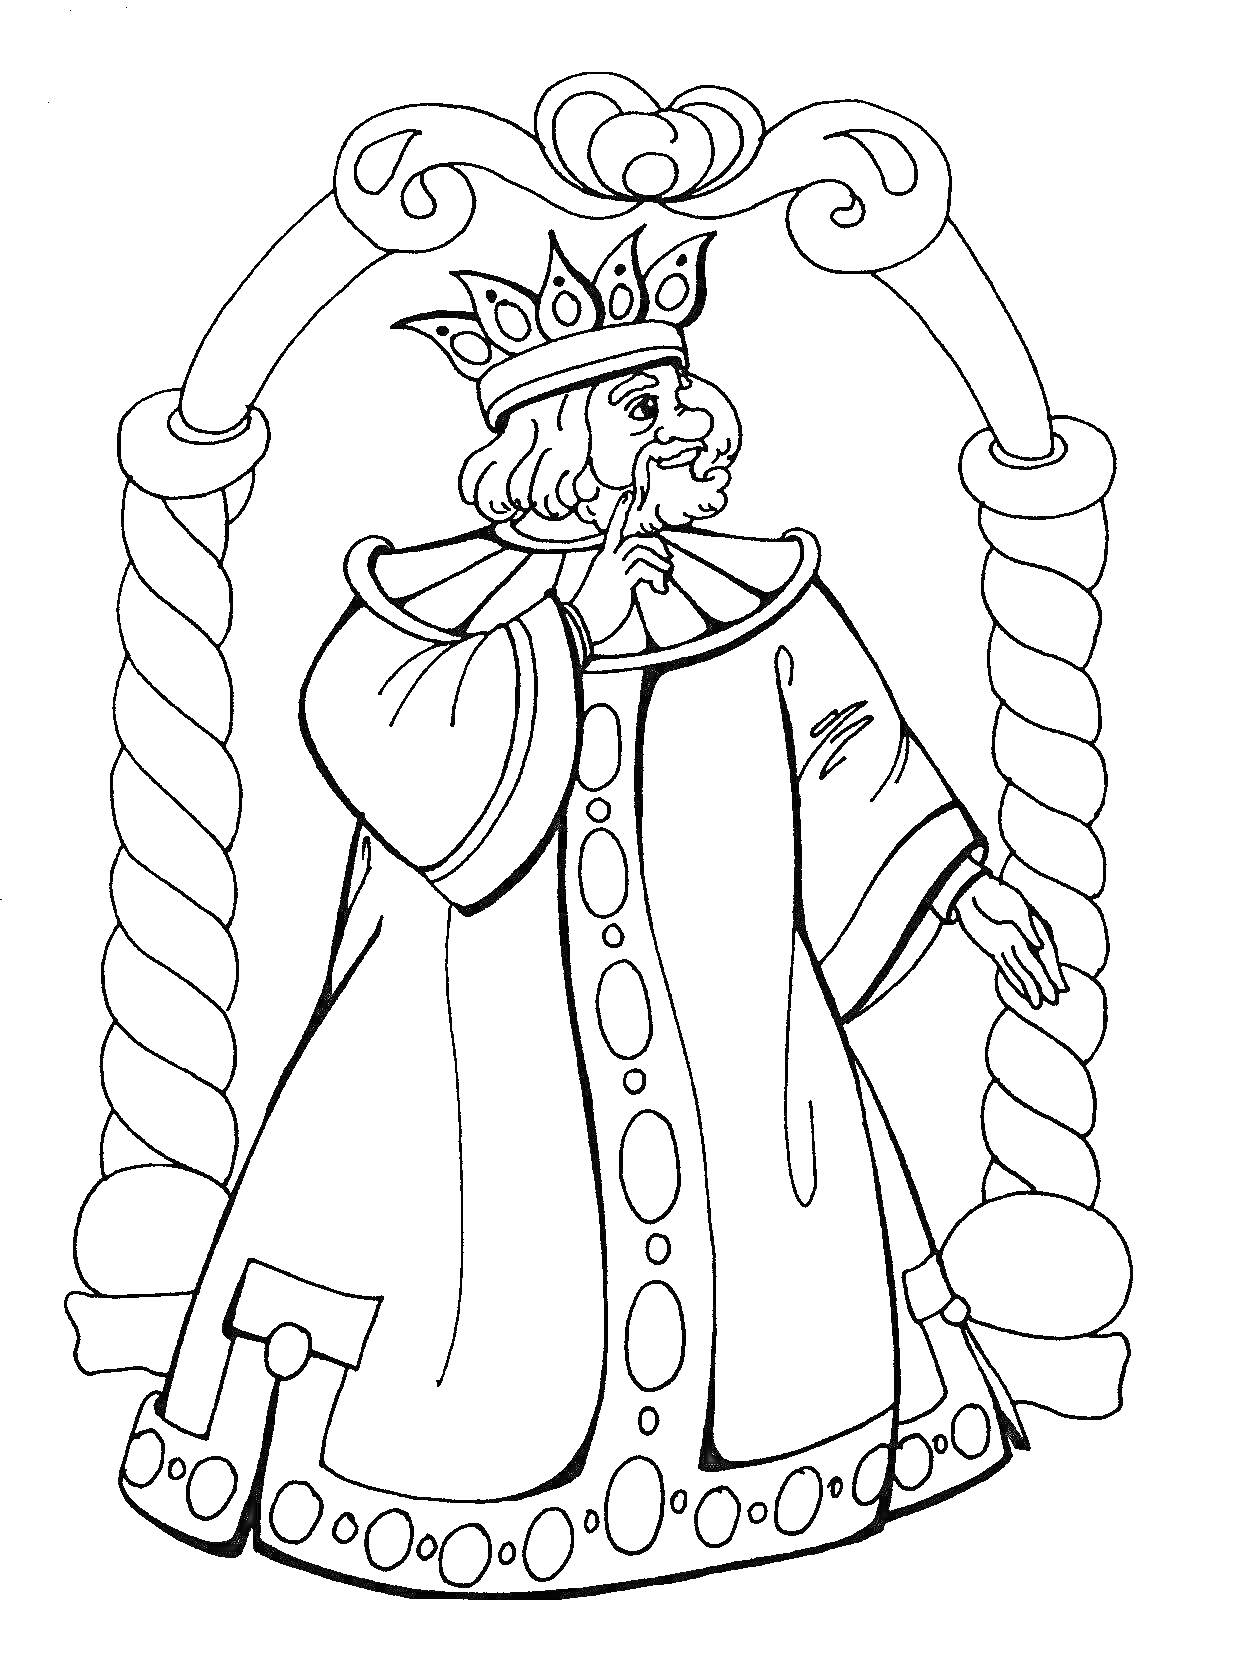 Царь Салтан в короне и мантии под аркой